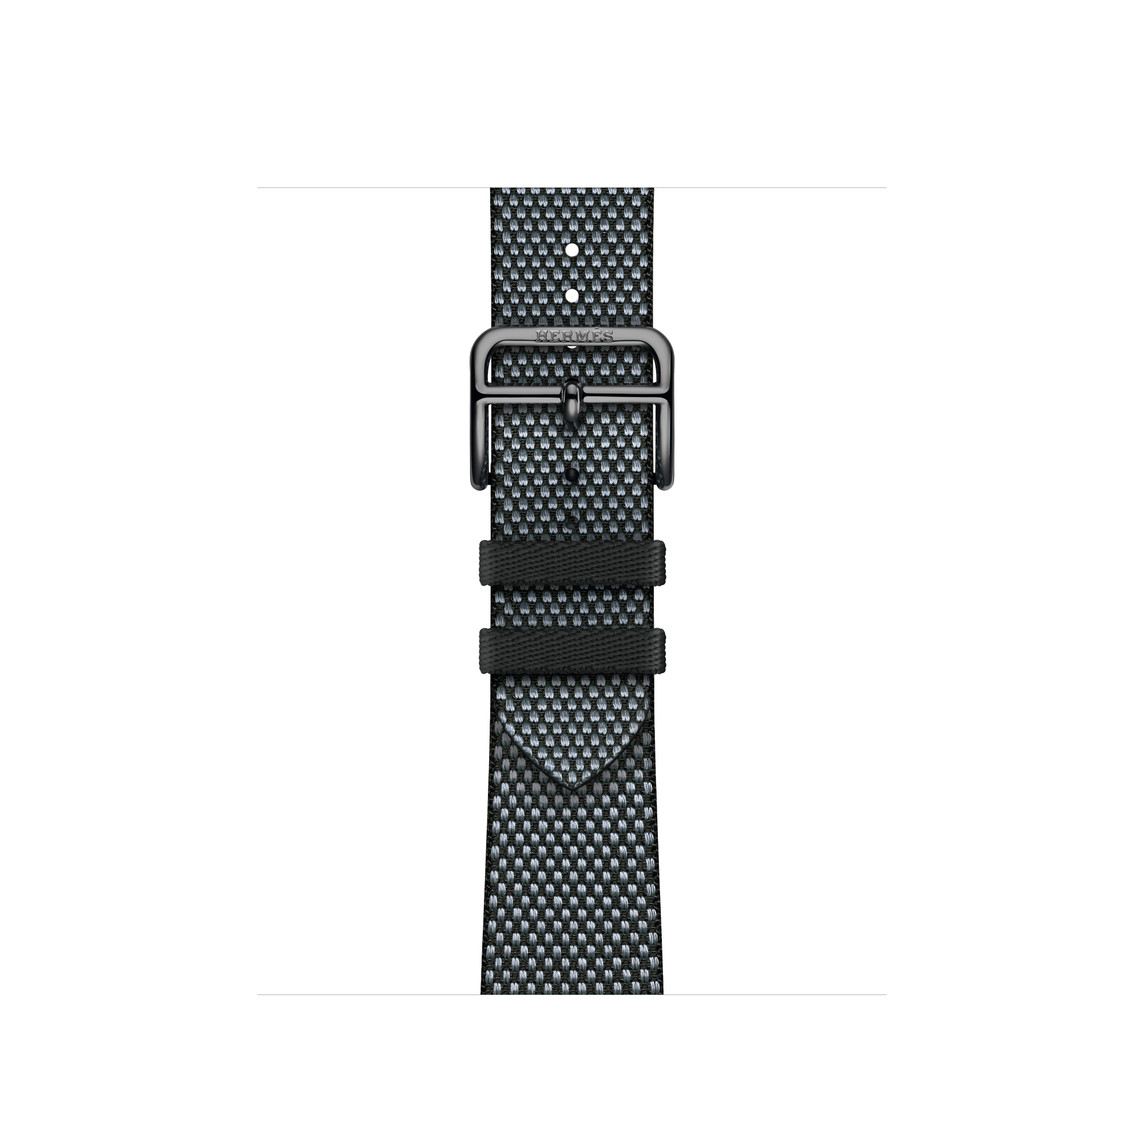 Toile H Simple Tour-armband i Noir (svart) och Denim (blå) med vävd textil och spänne i silverfärgat rostfritt stål.